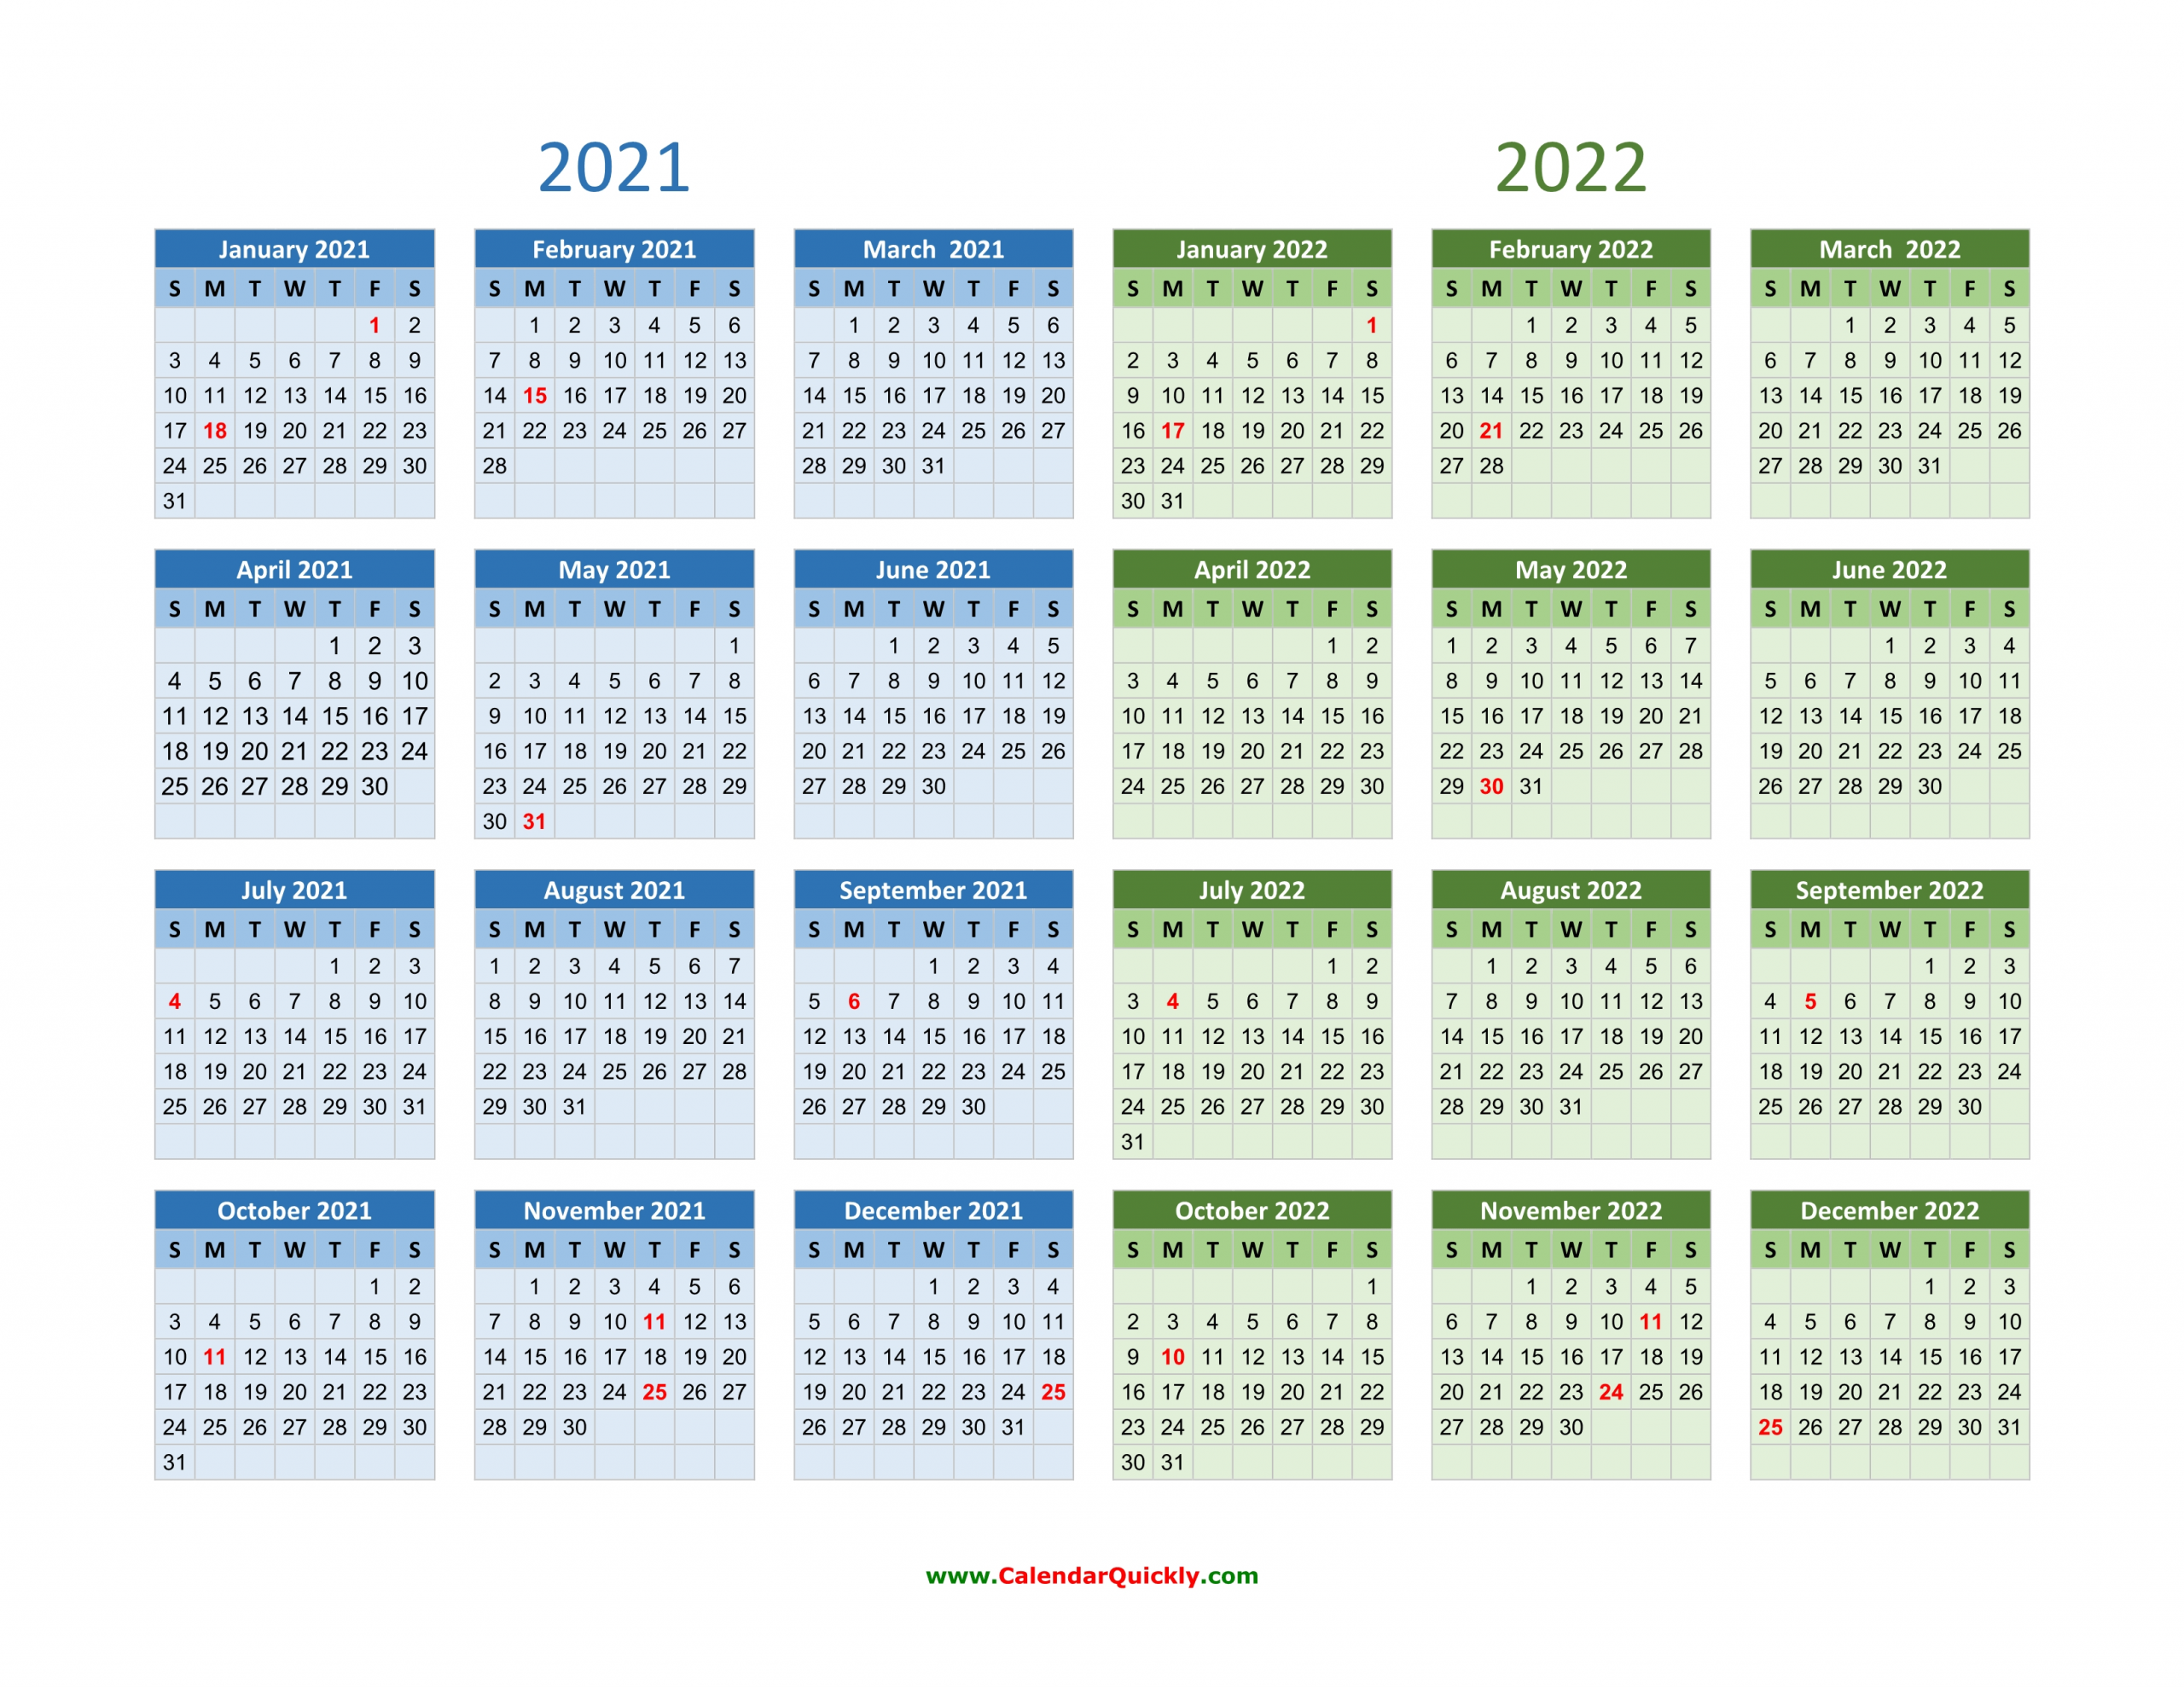 Get Three Year Calendar 2021 2022 2021